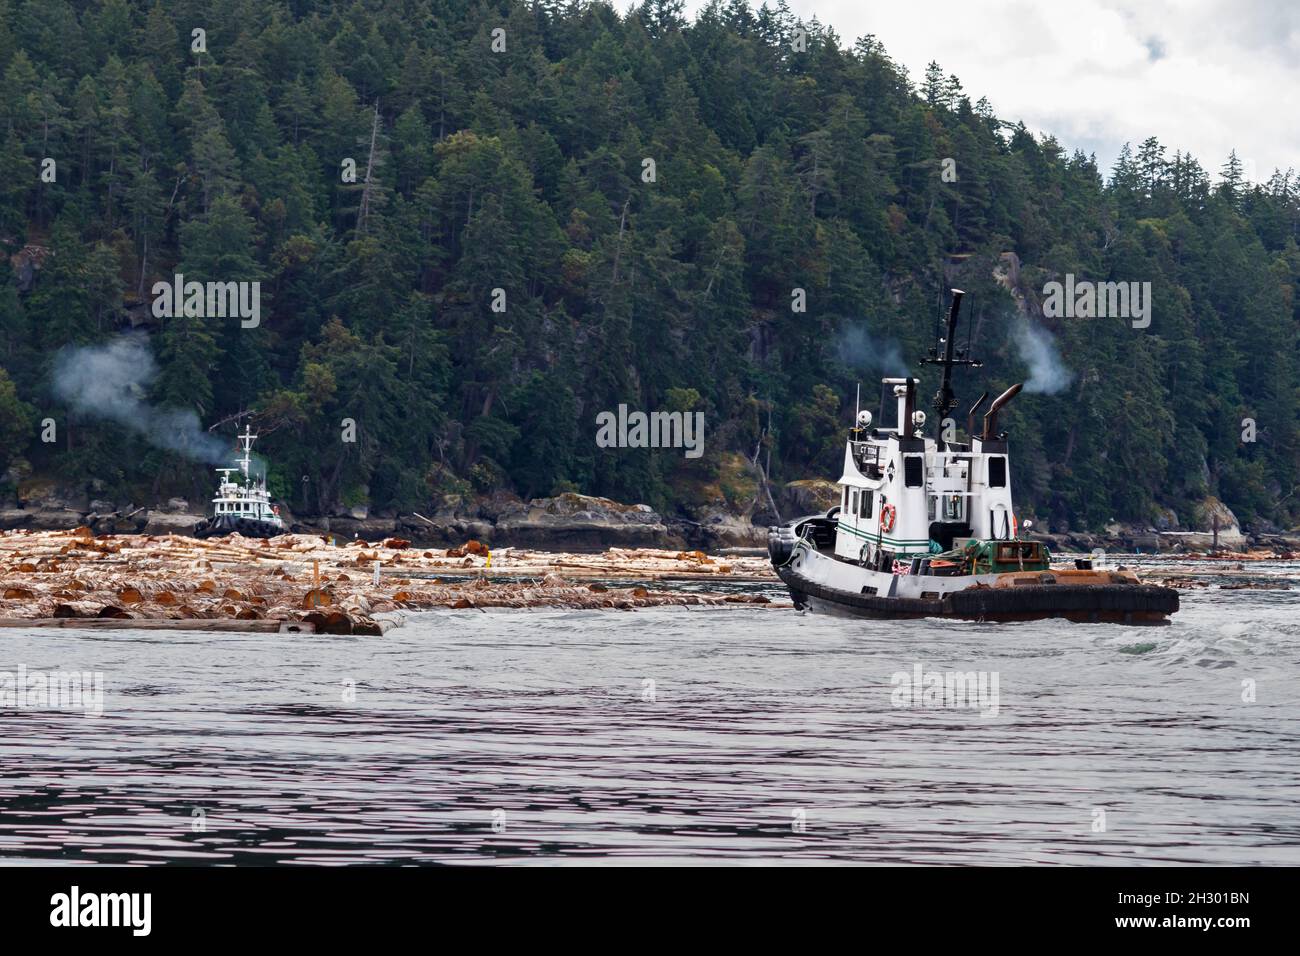 Zwei Schlepper, CT Titan und Hustler II, arbeiten zusammen und treiben einen Holzboom an, um ihn entlang des waldreichen Valdes Island, British Columbia, zu bewegen. Stockfoto